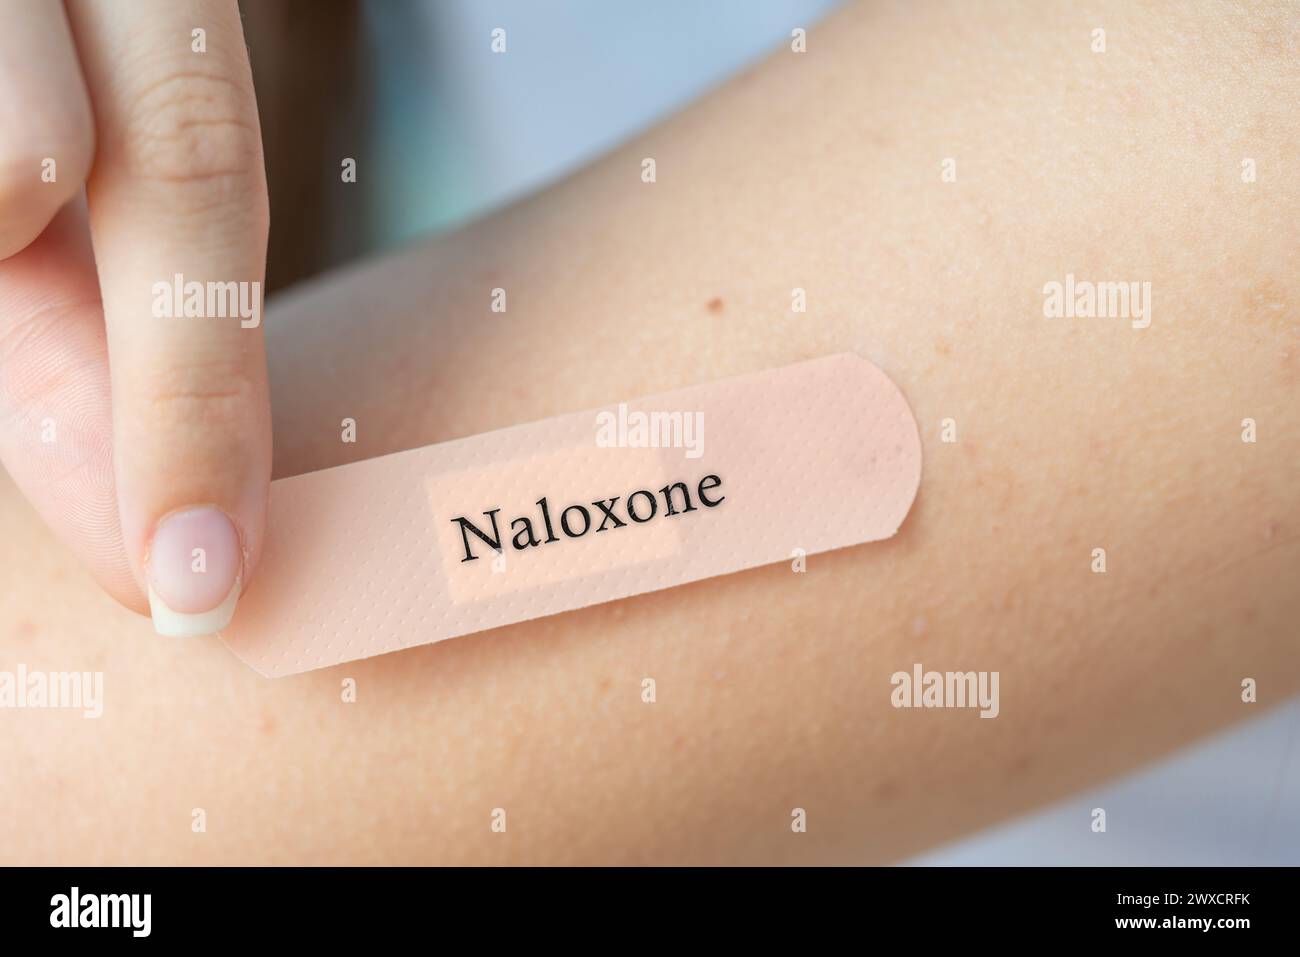 Naloxon transdermales Patch, konzeptuelles Bild. Opioid-Rezeptor-Antagonist zur Aufhebung der Opioid-Überdosierung. Stockfoto